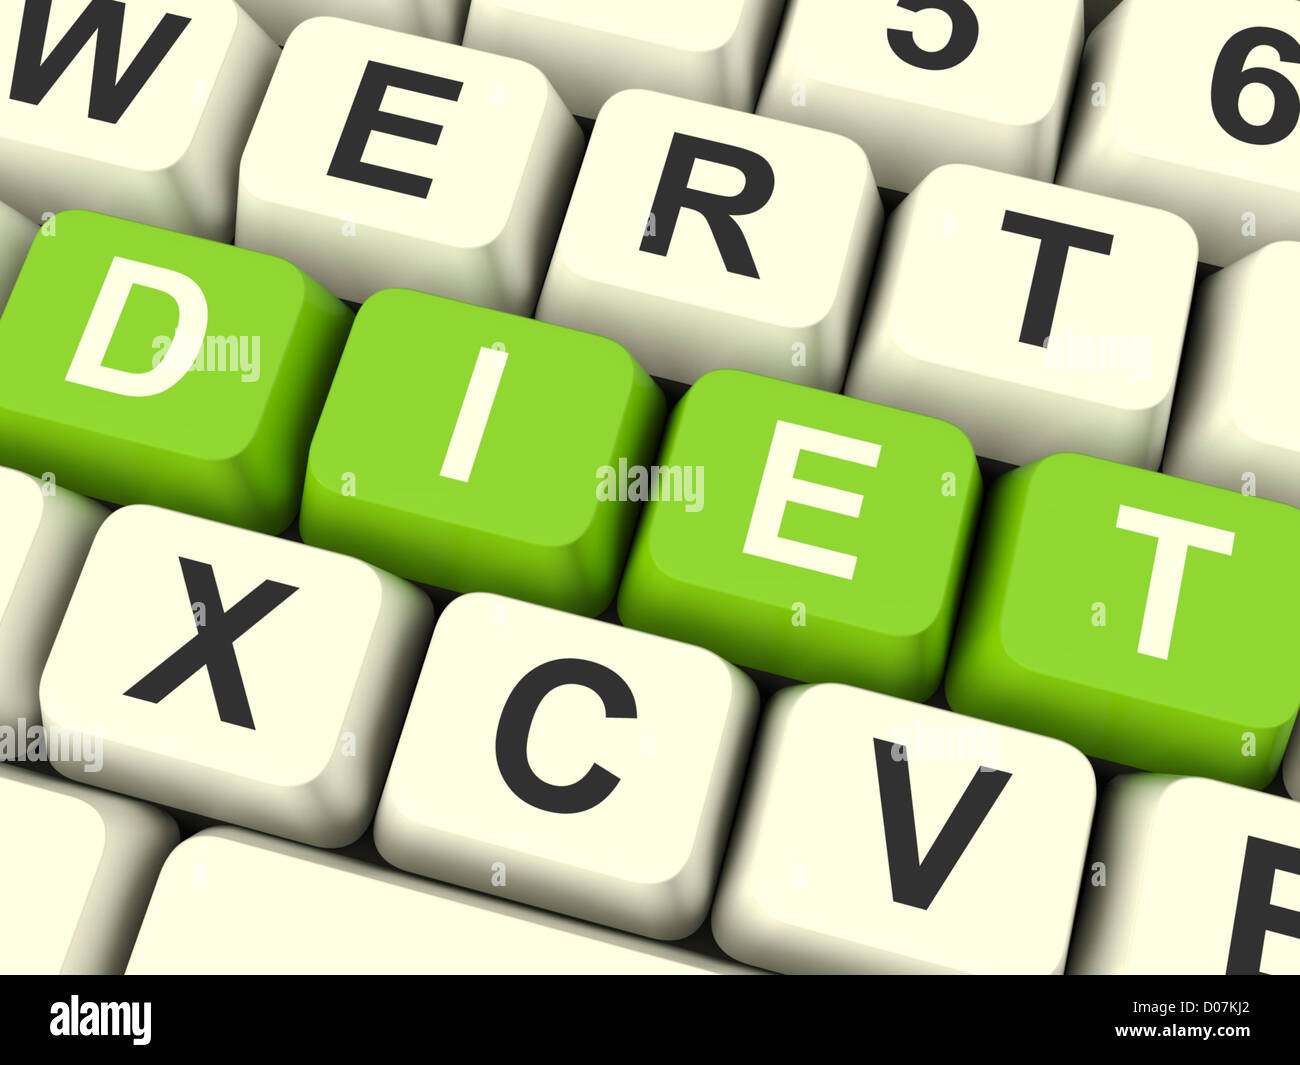 Diät-Computer-Tasten abnehmen Informationen und Empfehlungen Stockfoto